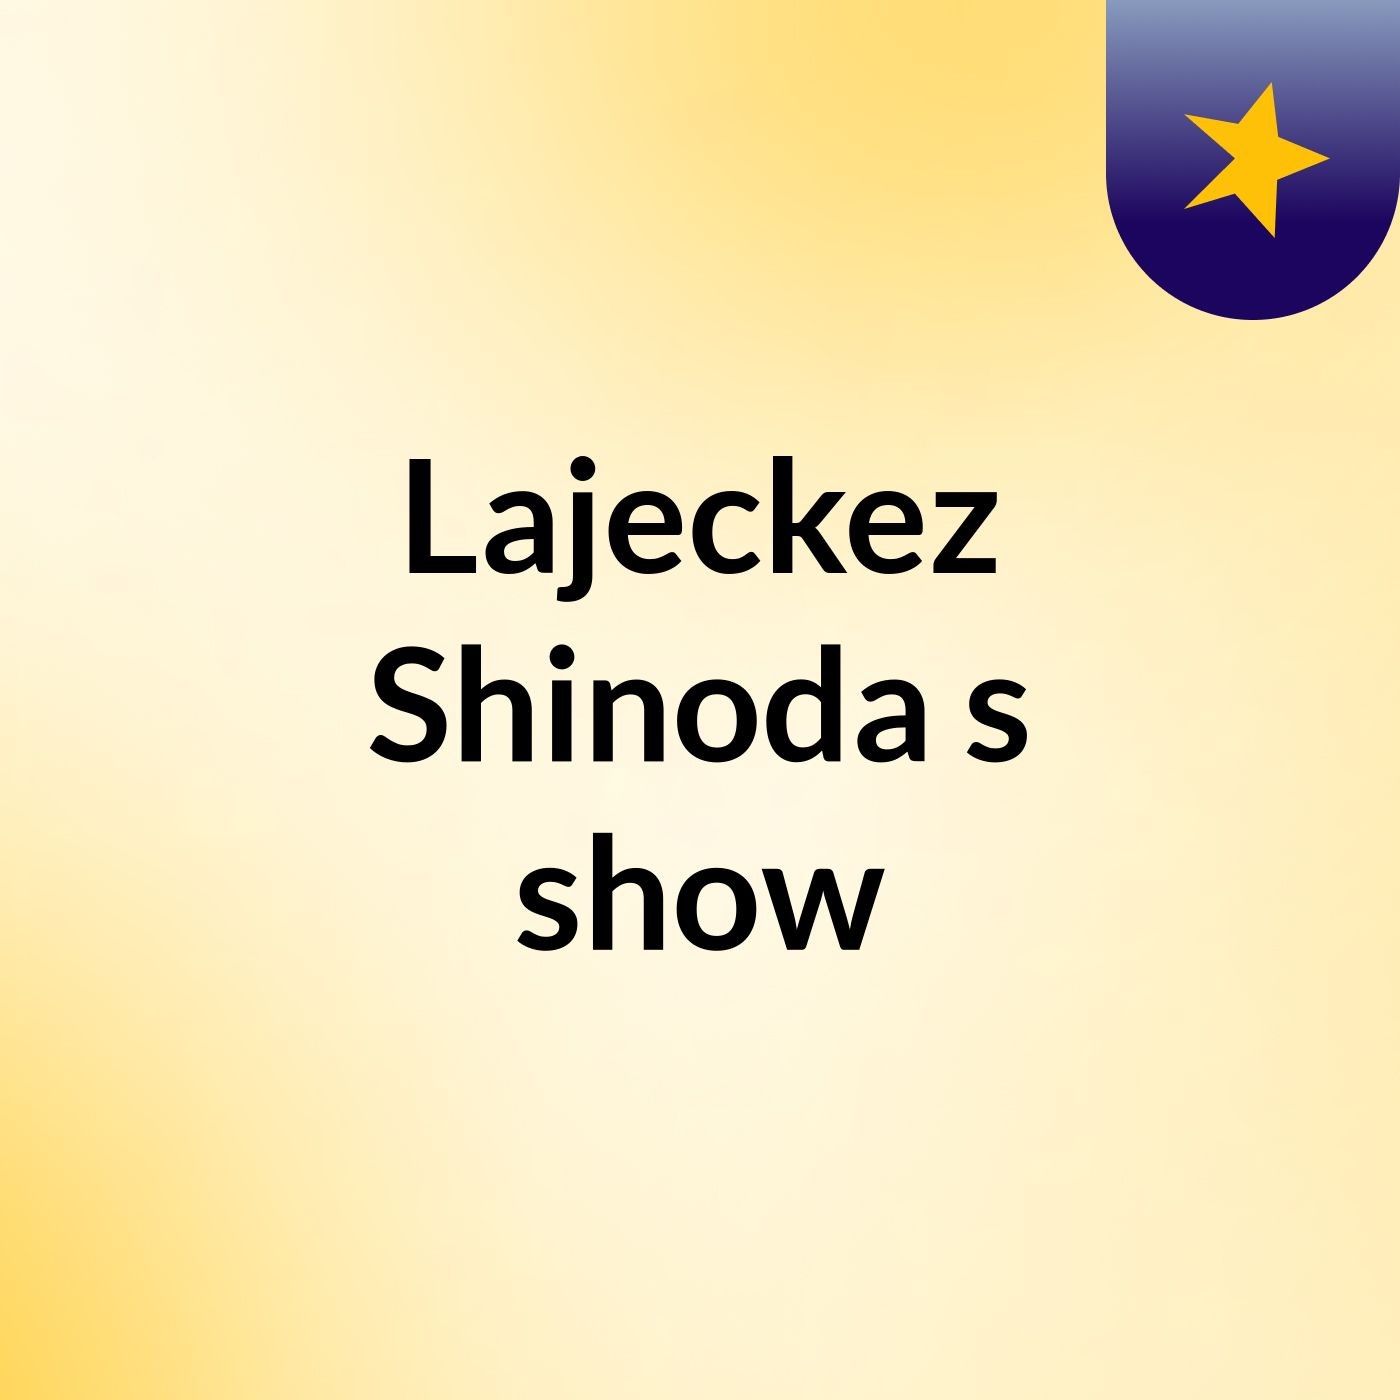 Lajeckez Shinoda's show